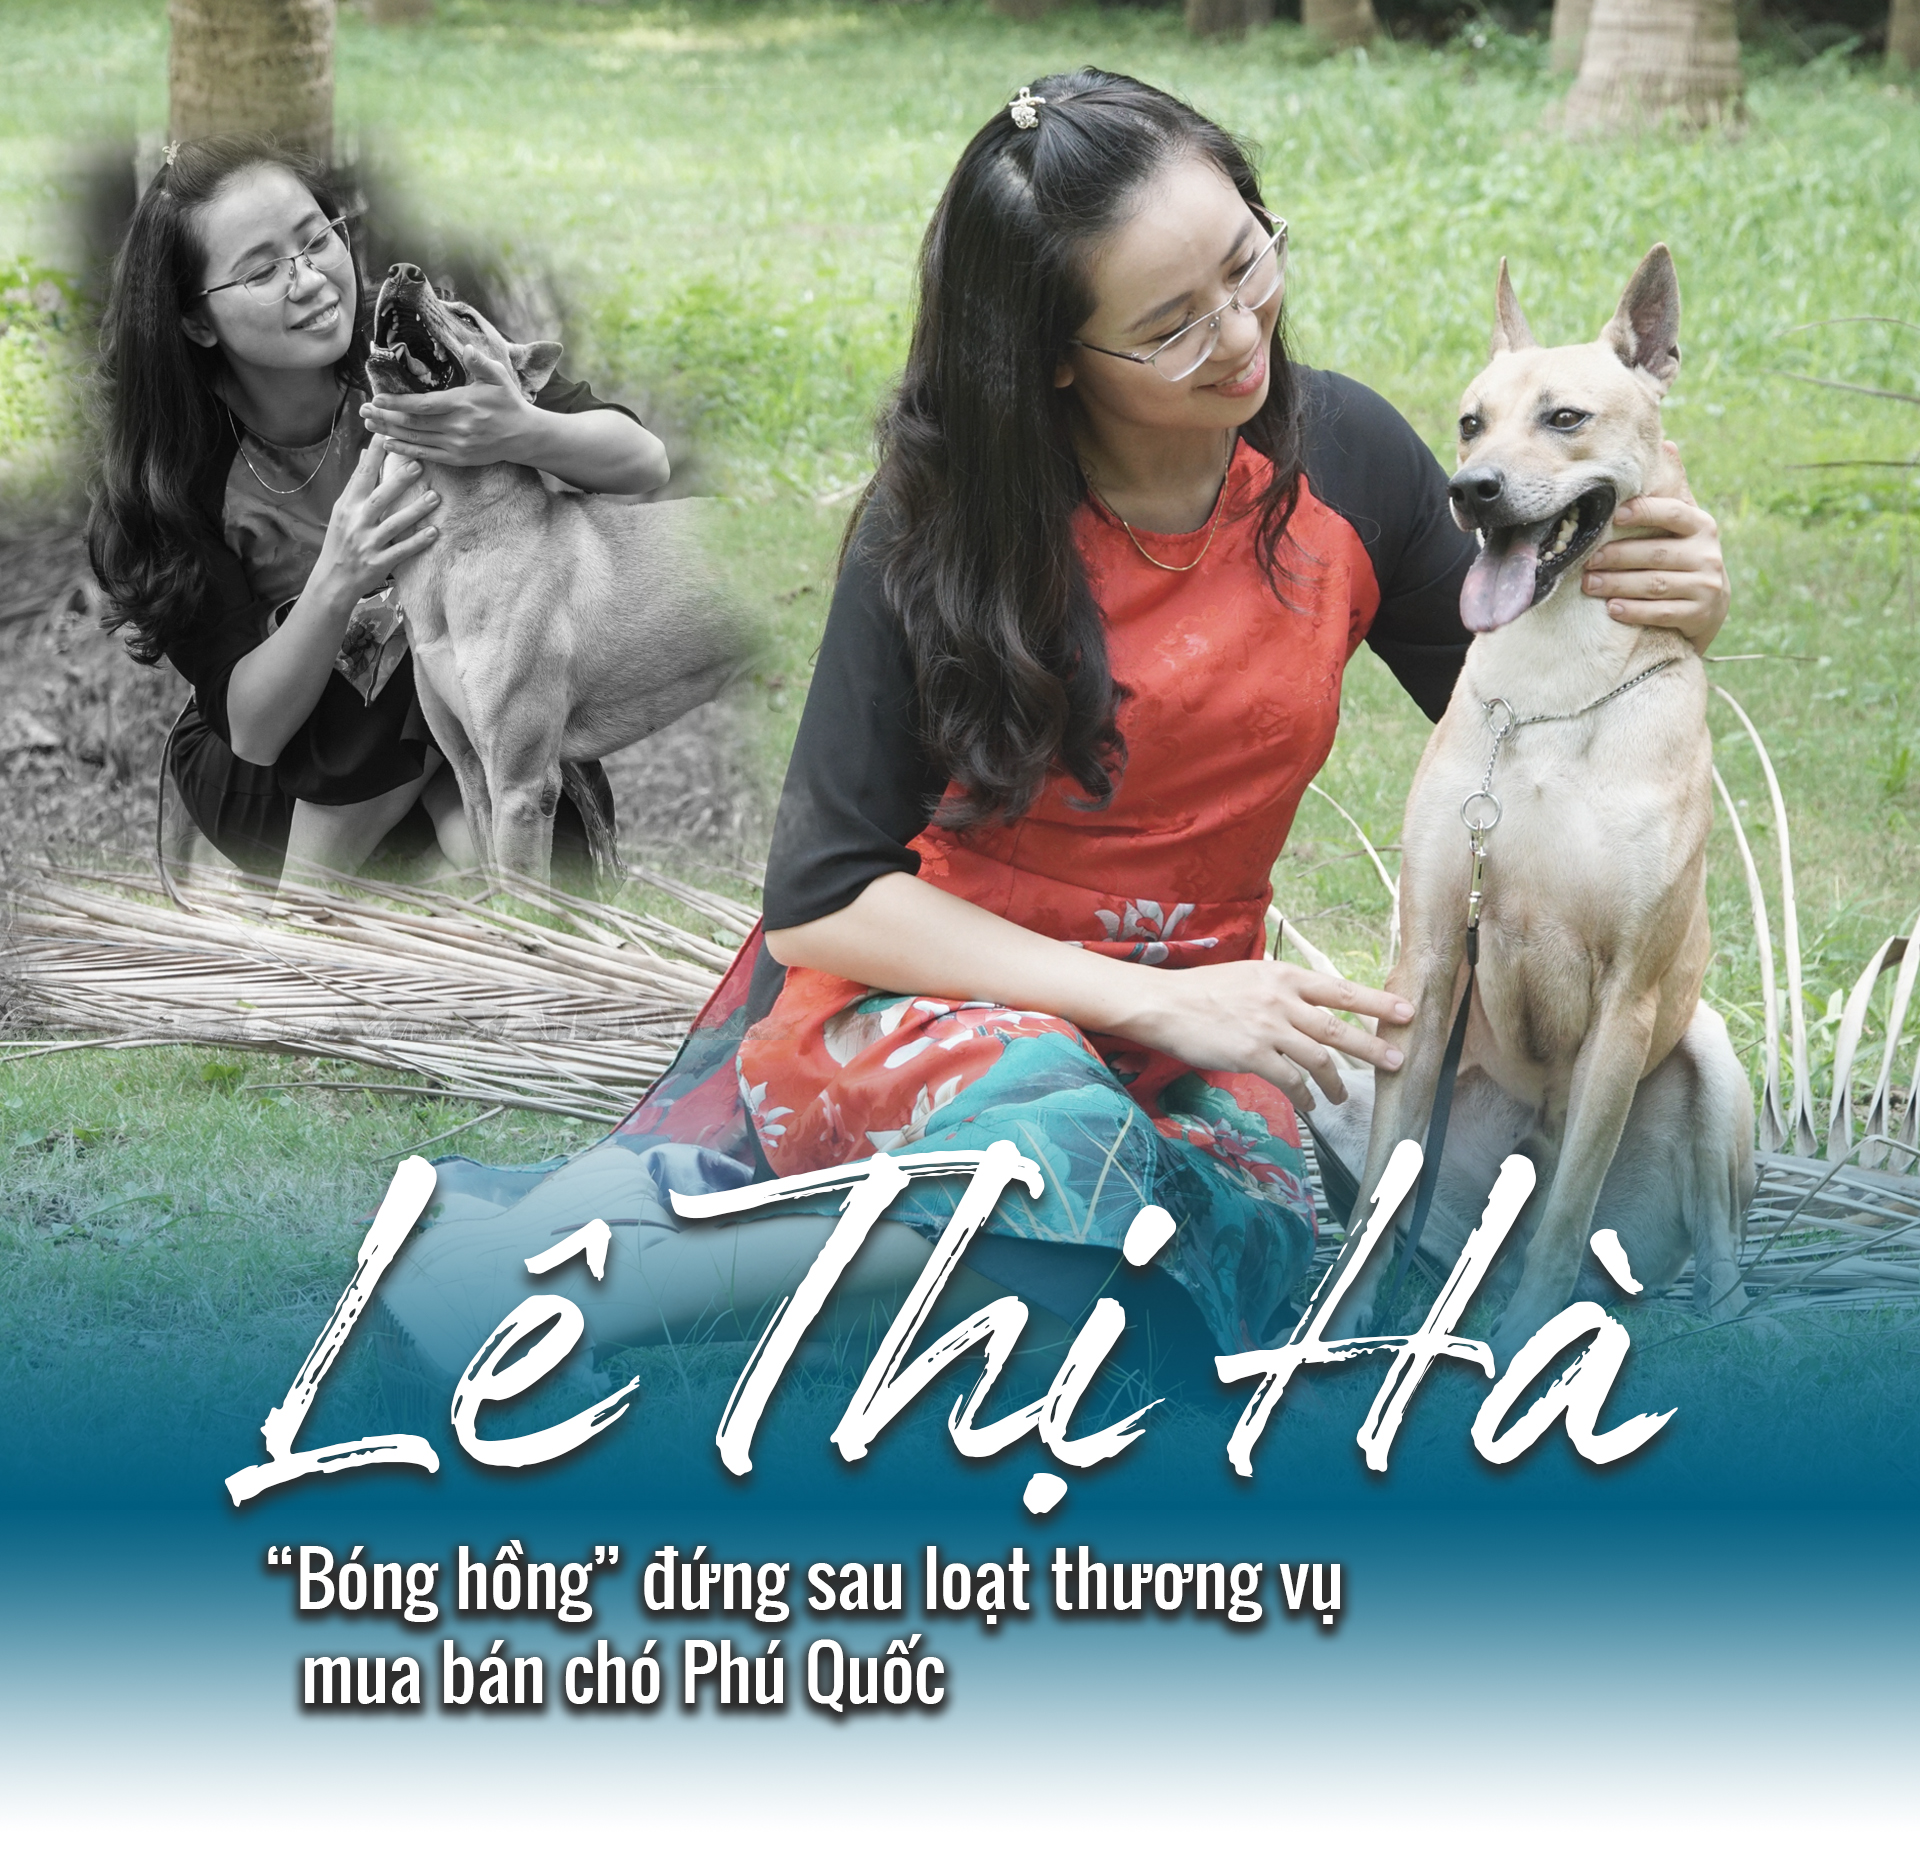 Chân dung “bóng hồng” đứng sau loạt thương vụ mua bán chó Phú Quốc đình đám ở Việt Nam - 1